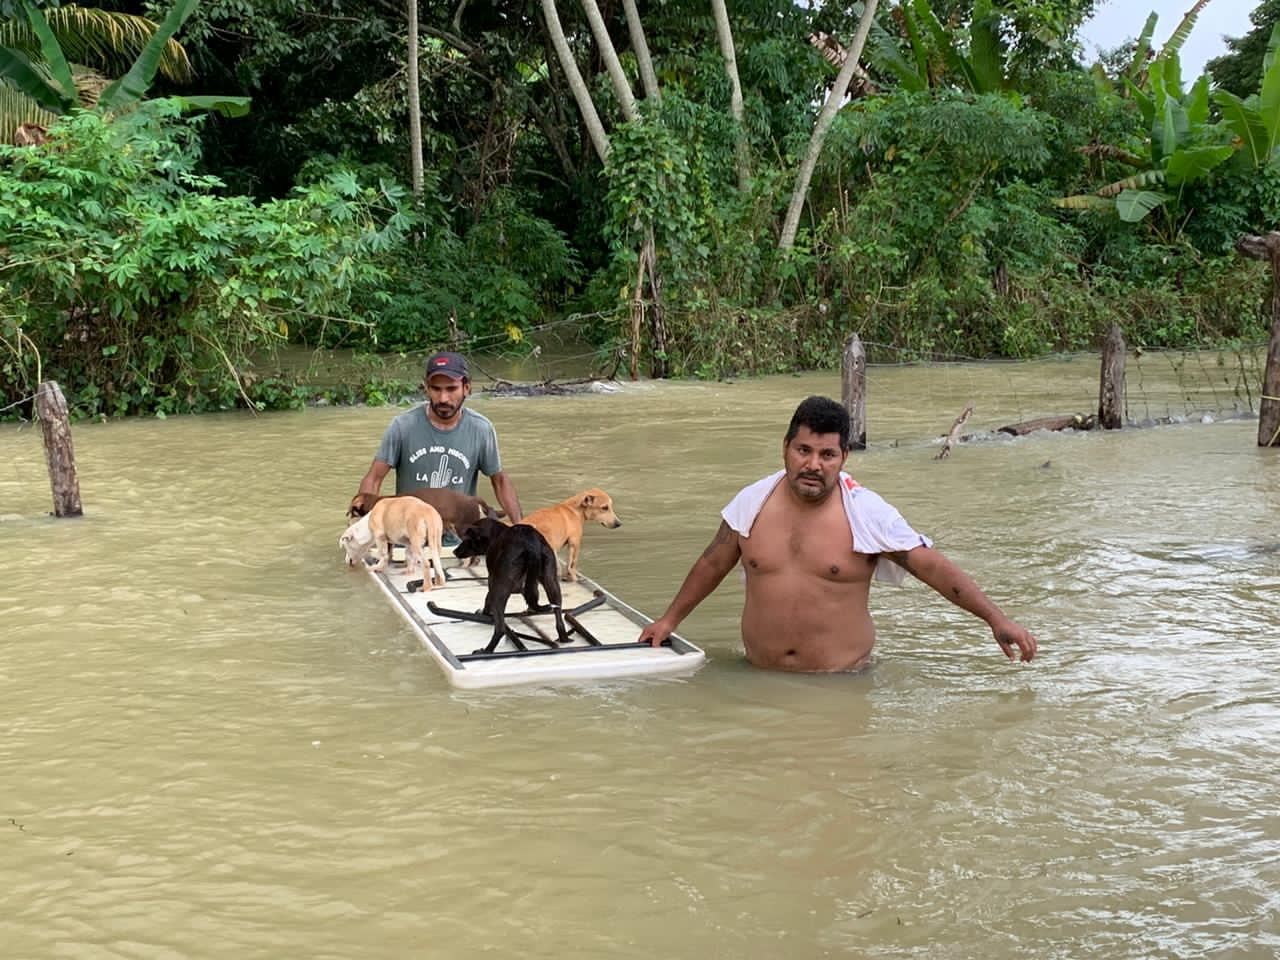 La gente camina en las inundaciones después de la tormenta tropical Eta y los frentes fríos en Macuspana, Tabasco, México, el 9 de noviembre de 2020 en esta imagen obtenida de las redes sociales. Foto tomada el 9 de noviembre de 2020 FOTO: Jesus Castellanos Perez/vía REUTERS 